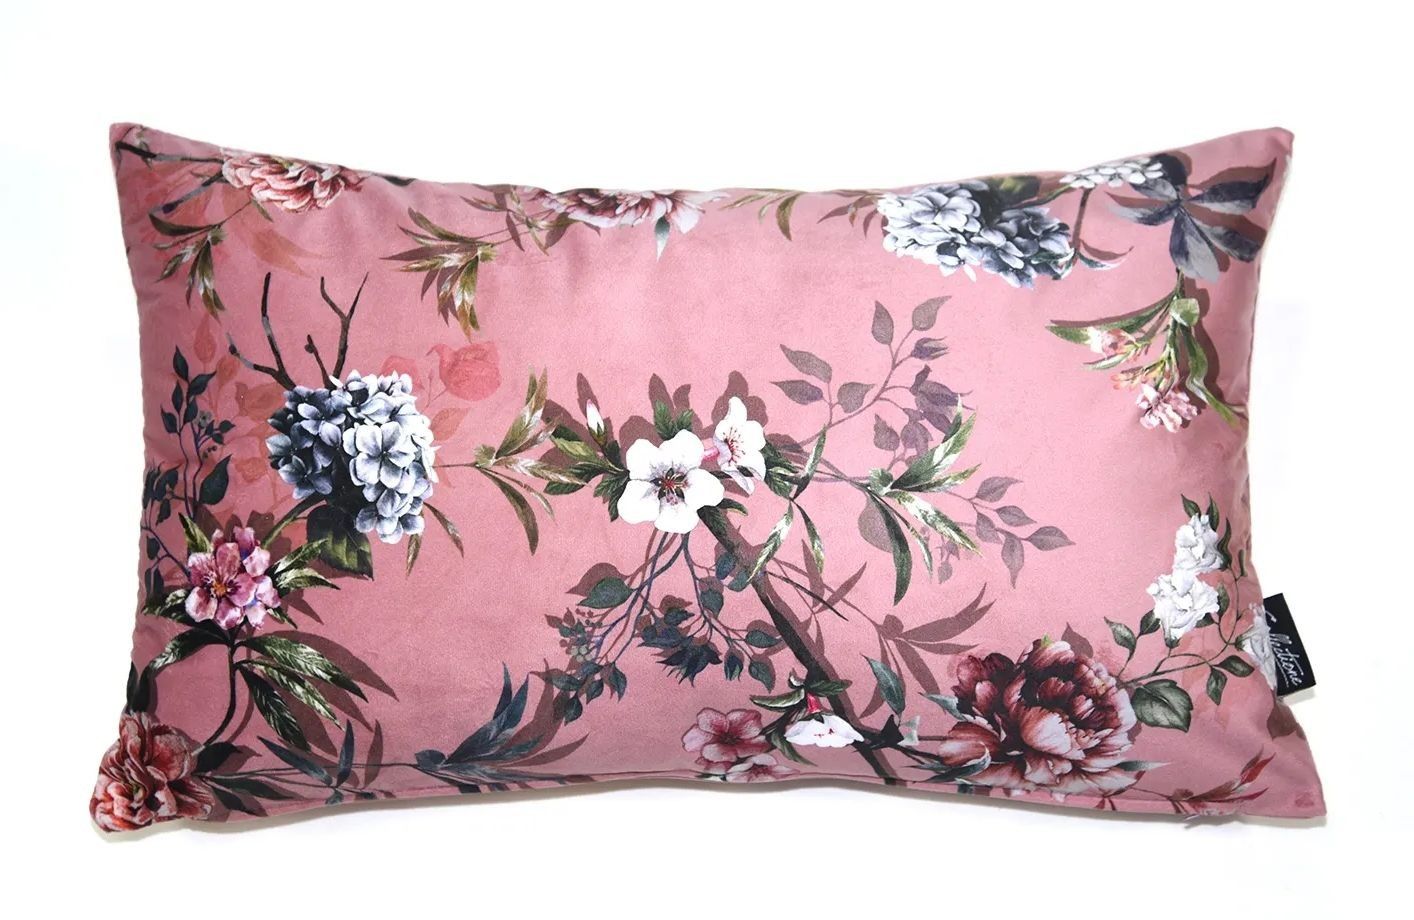 Růžový sametový polštář s květy Luisa roze- 30*50cm Collectione - LaHome - vintage dekorace